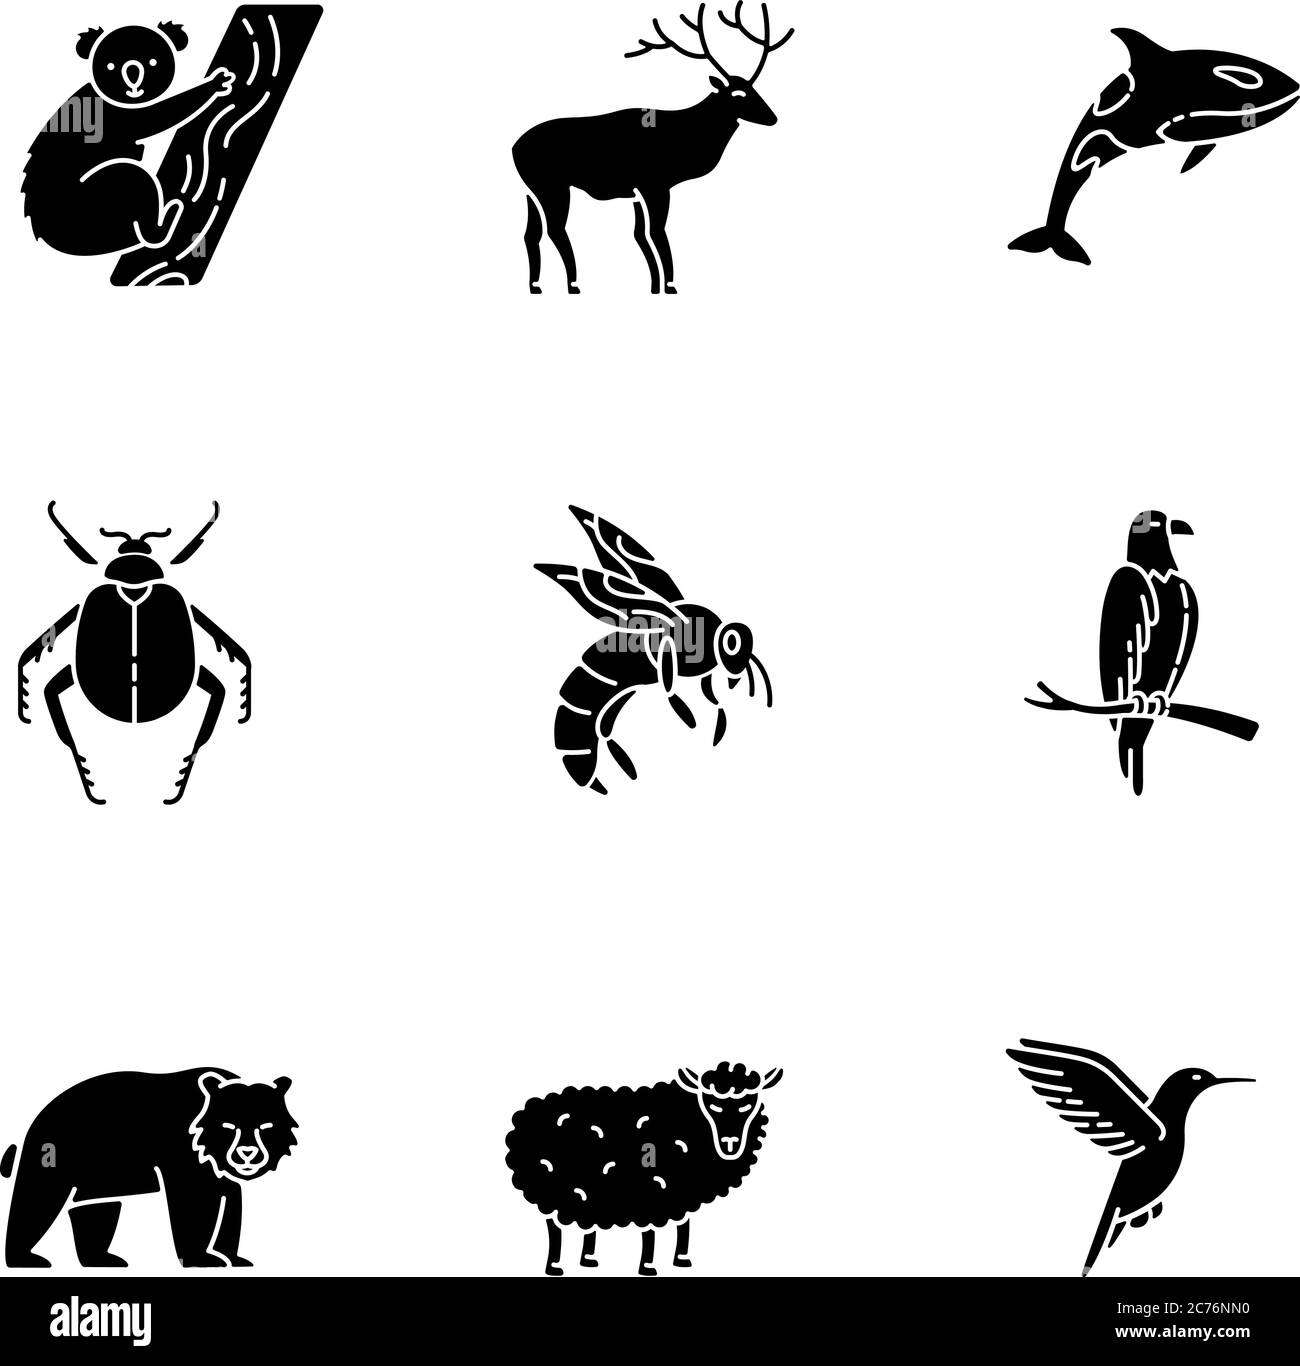 Specie animale glifo nero icone impostato su spazio bianco. Uccelli volanti, animali terrestri e creature marine simboli di silhouette. Fauna selvatica varia, esotica e ord Illustrazione Vettoriale